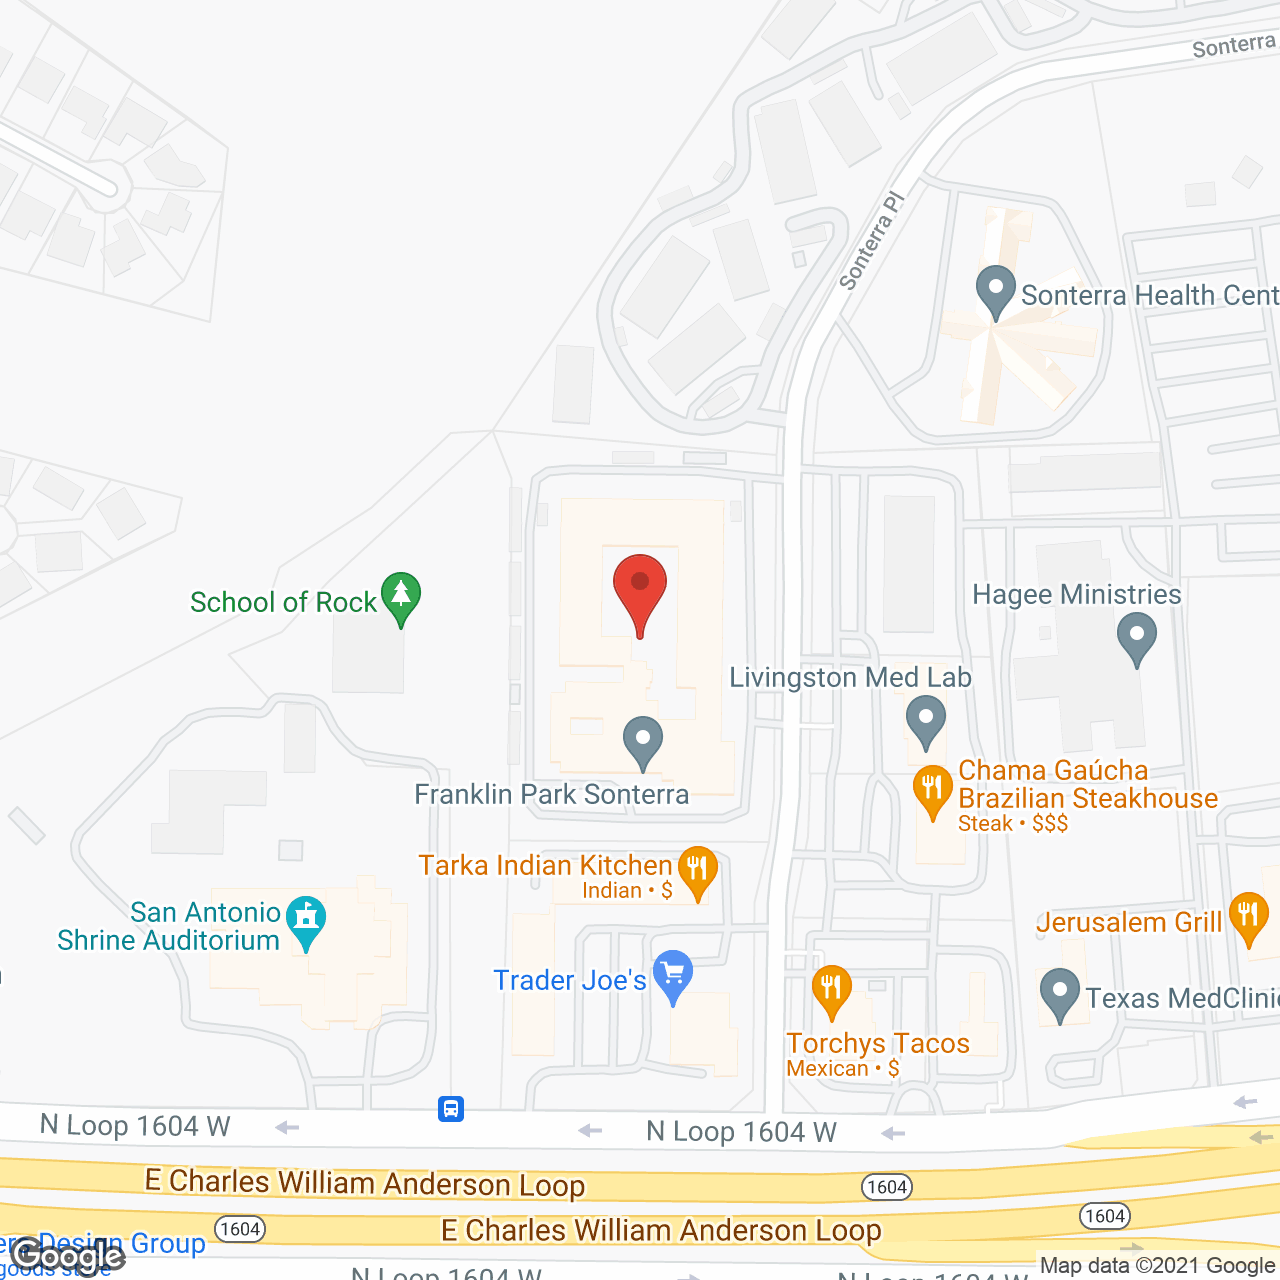 Franklin Park Sonterra - AL in google map